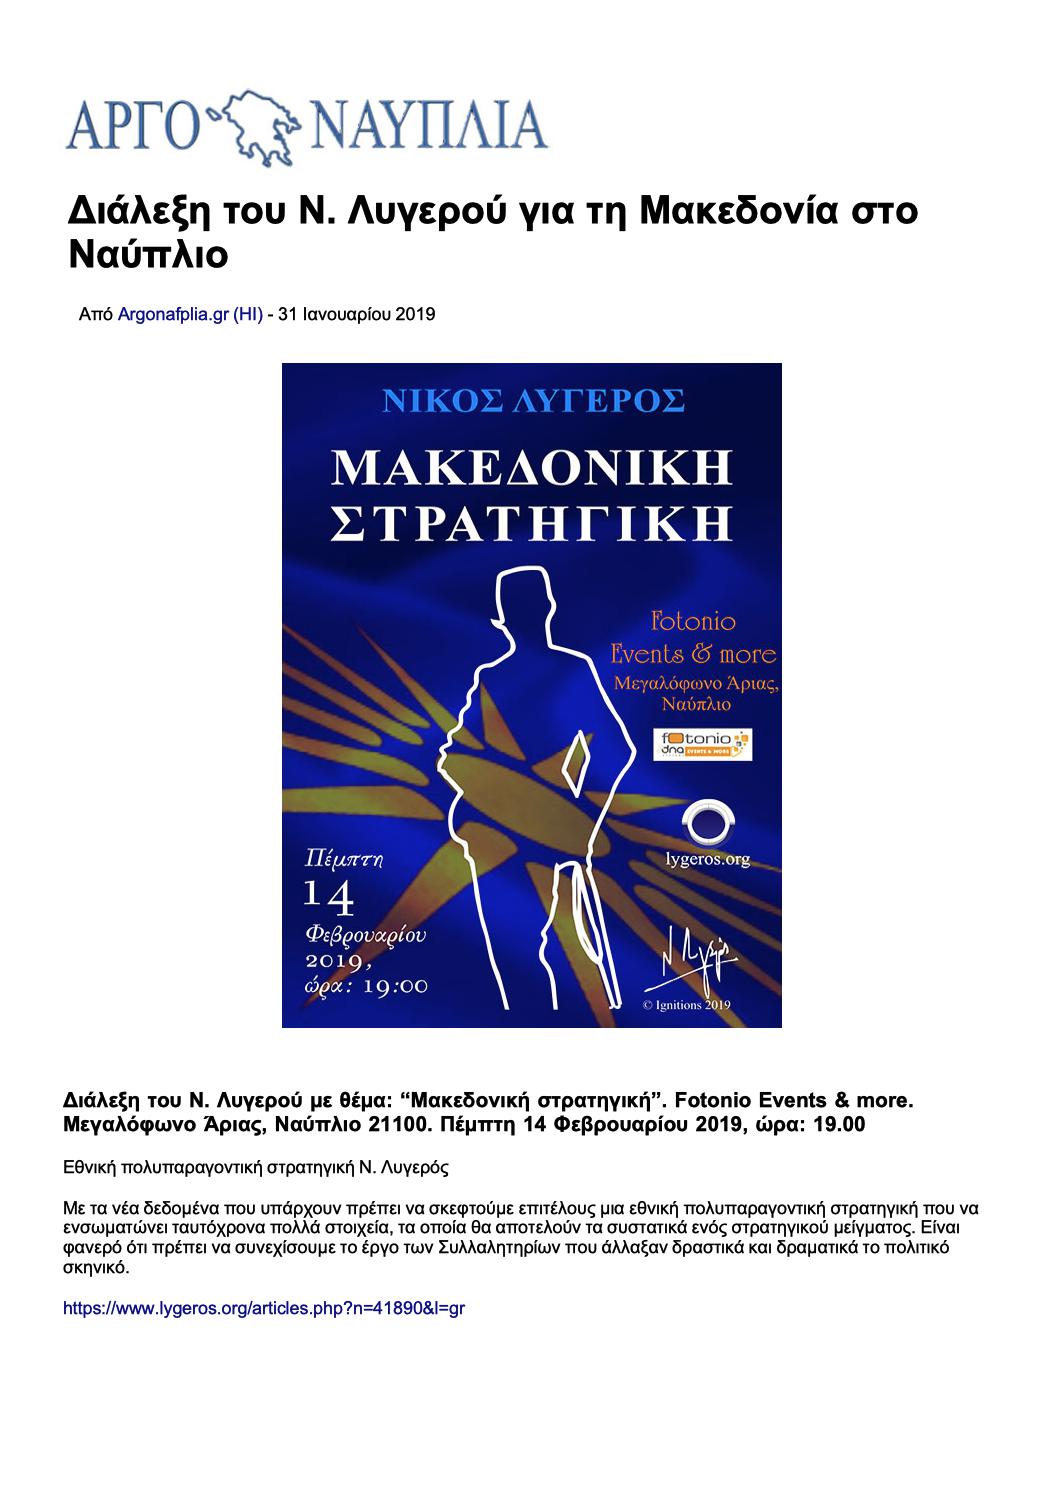 Διάλεξη του Ν. Λυγερού για τη Μακεδονία στο Ναύπλιο, Αργοναυπλία, 31/01/2019 - Publication